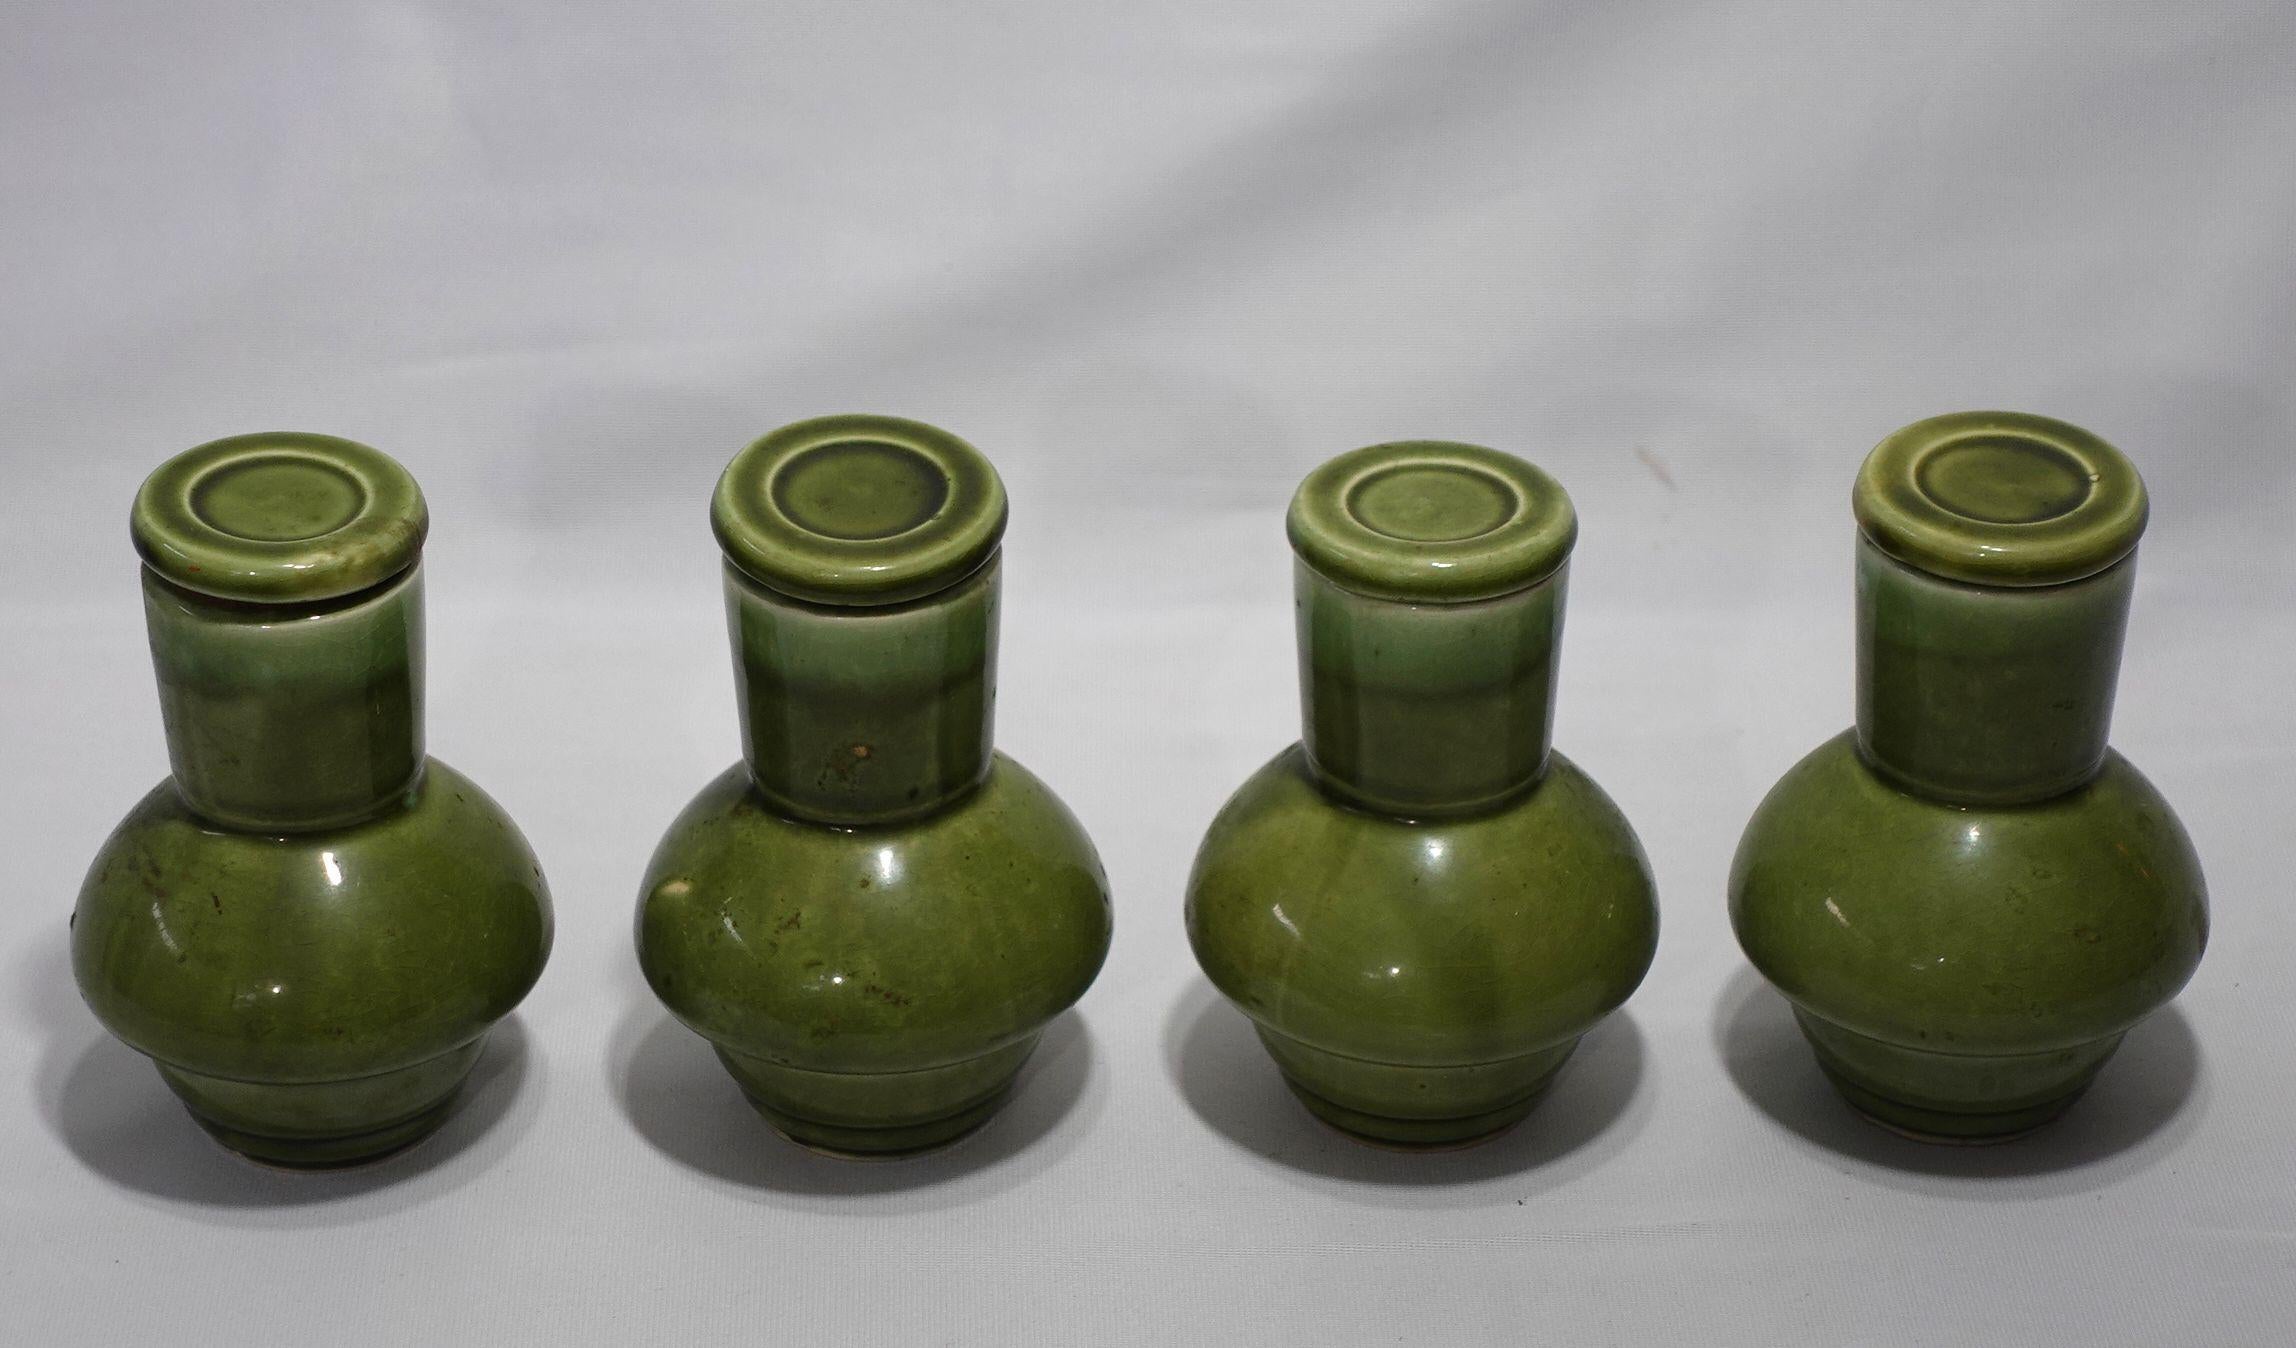 4 japanische NASCO-Porzellan-Sake-Flaschen, Mitte des 20. Jahrhunderts.
Grünes tropfglasiertes Porzellan mit Korkverschluss. Ein Teil des Korkens ist beschädigt. Label auf der Unterseite. Jede ist 5,5